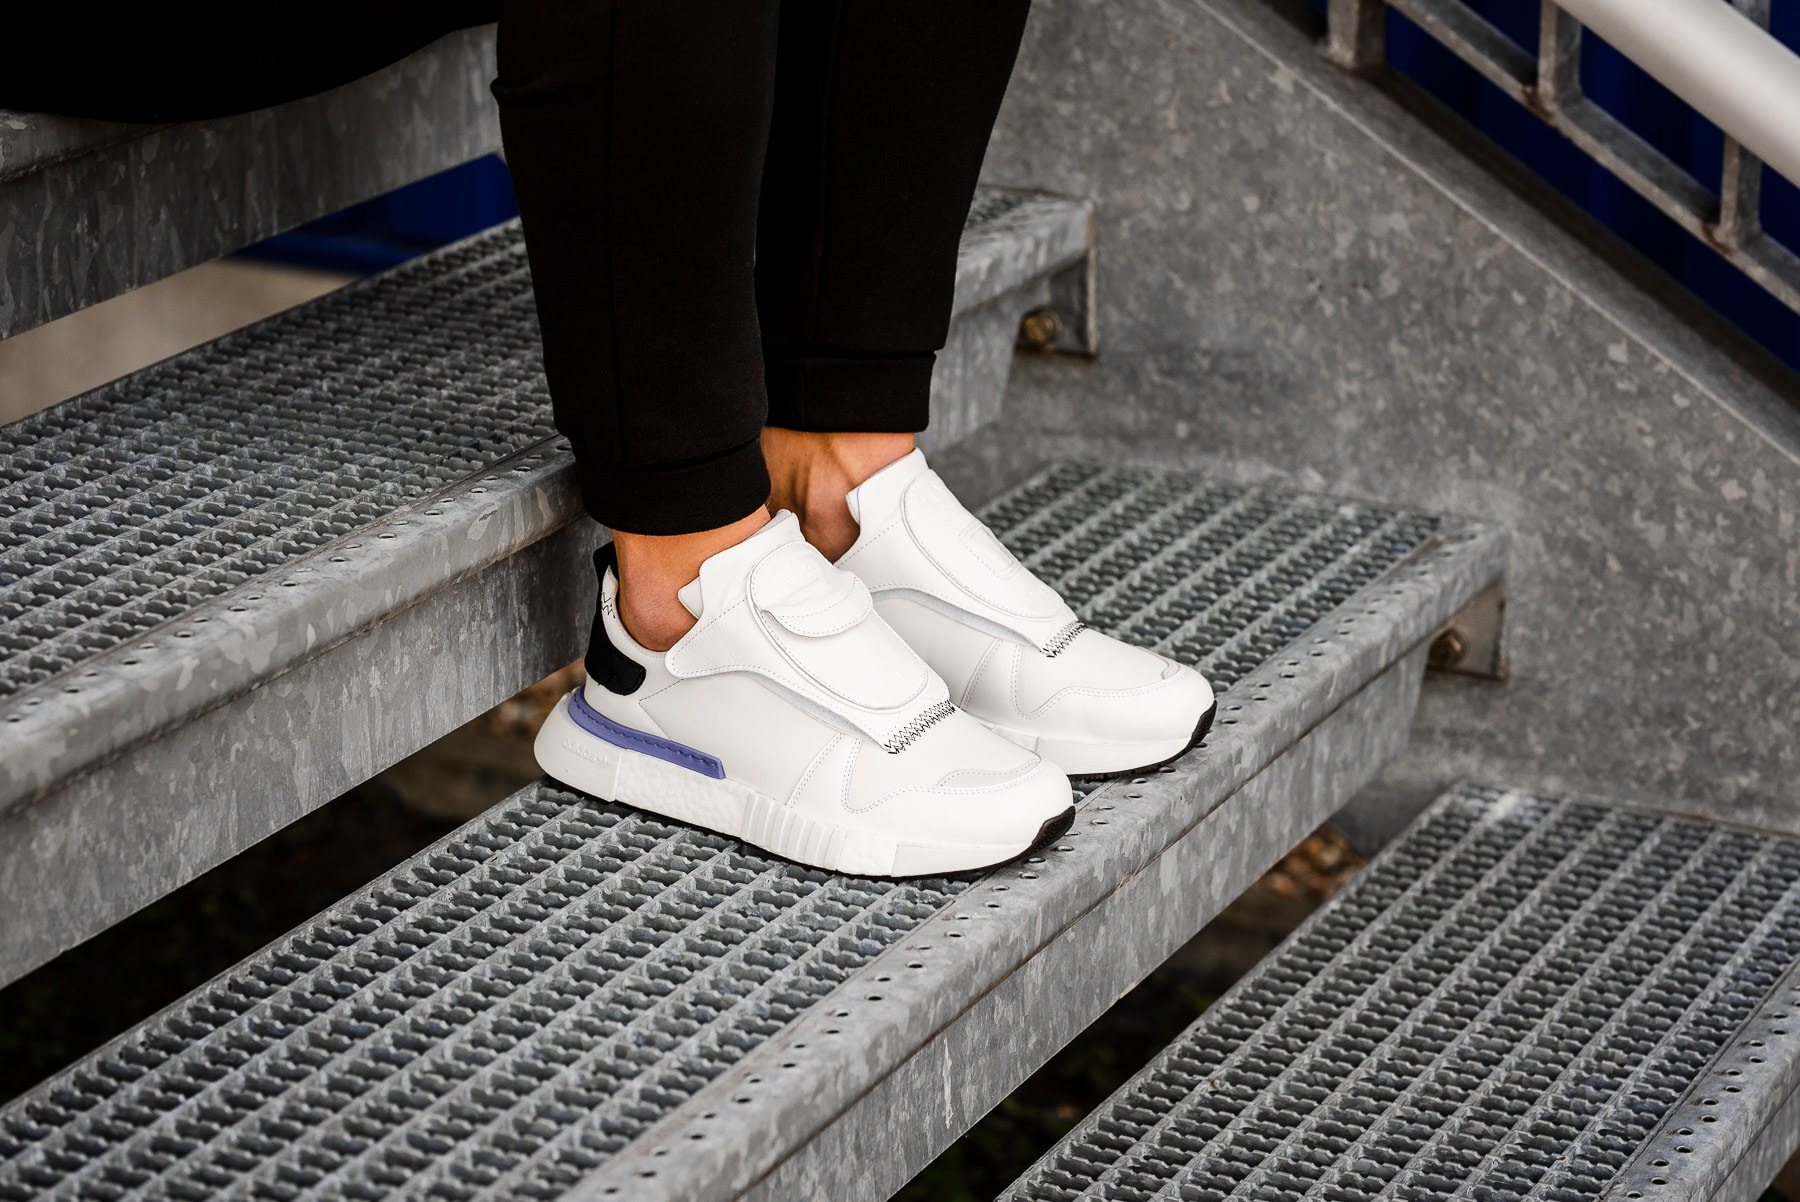 adidas Futurepacer Grey One Footwear White Core Black On Feet june 9 2018 release date info drop sneakers shoes footwear berlin overkill